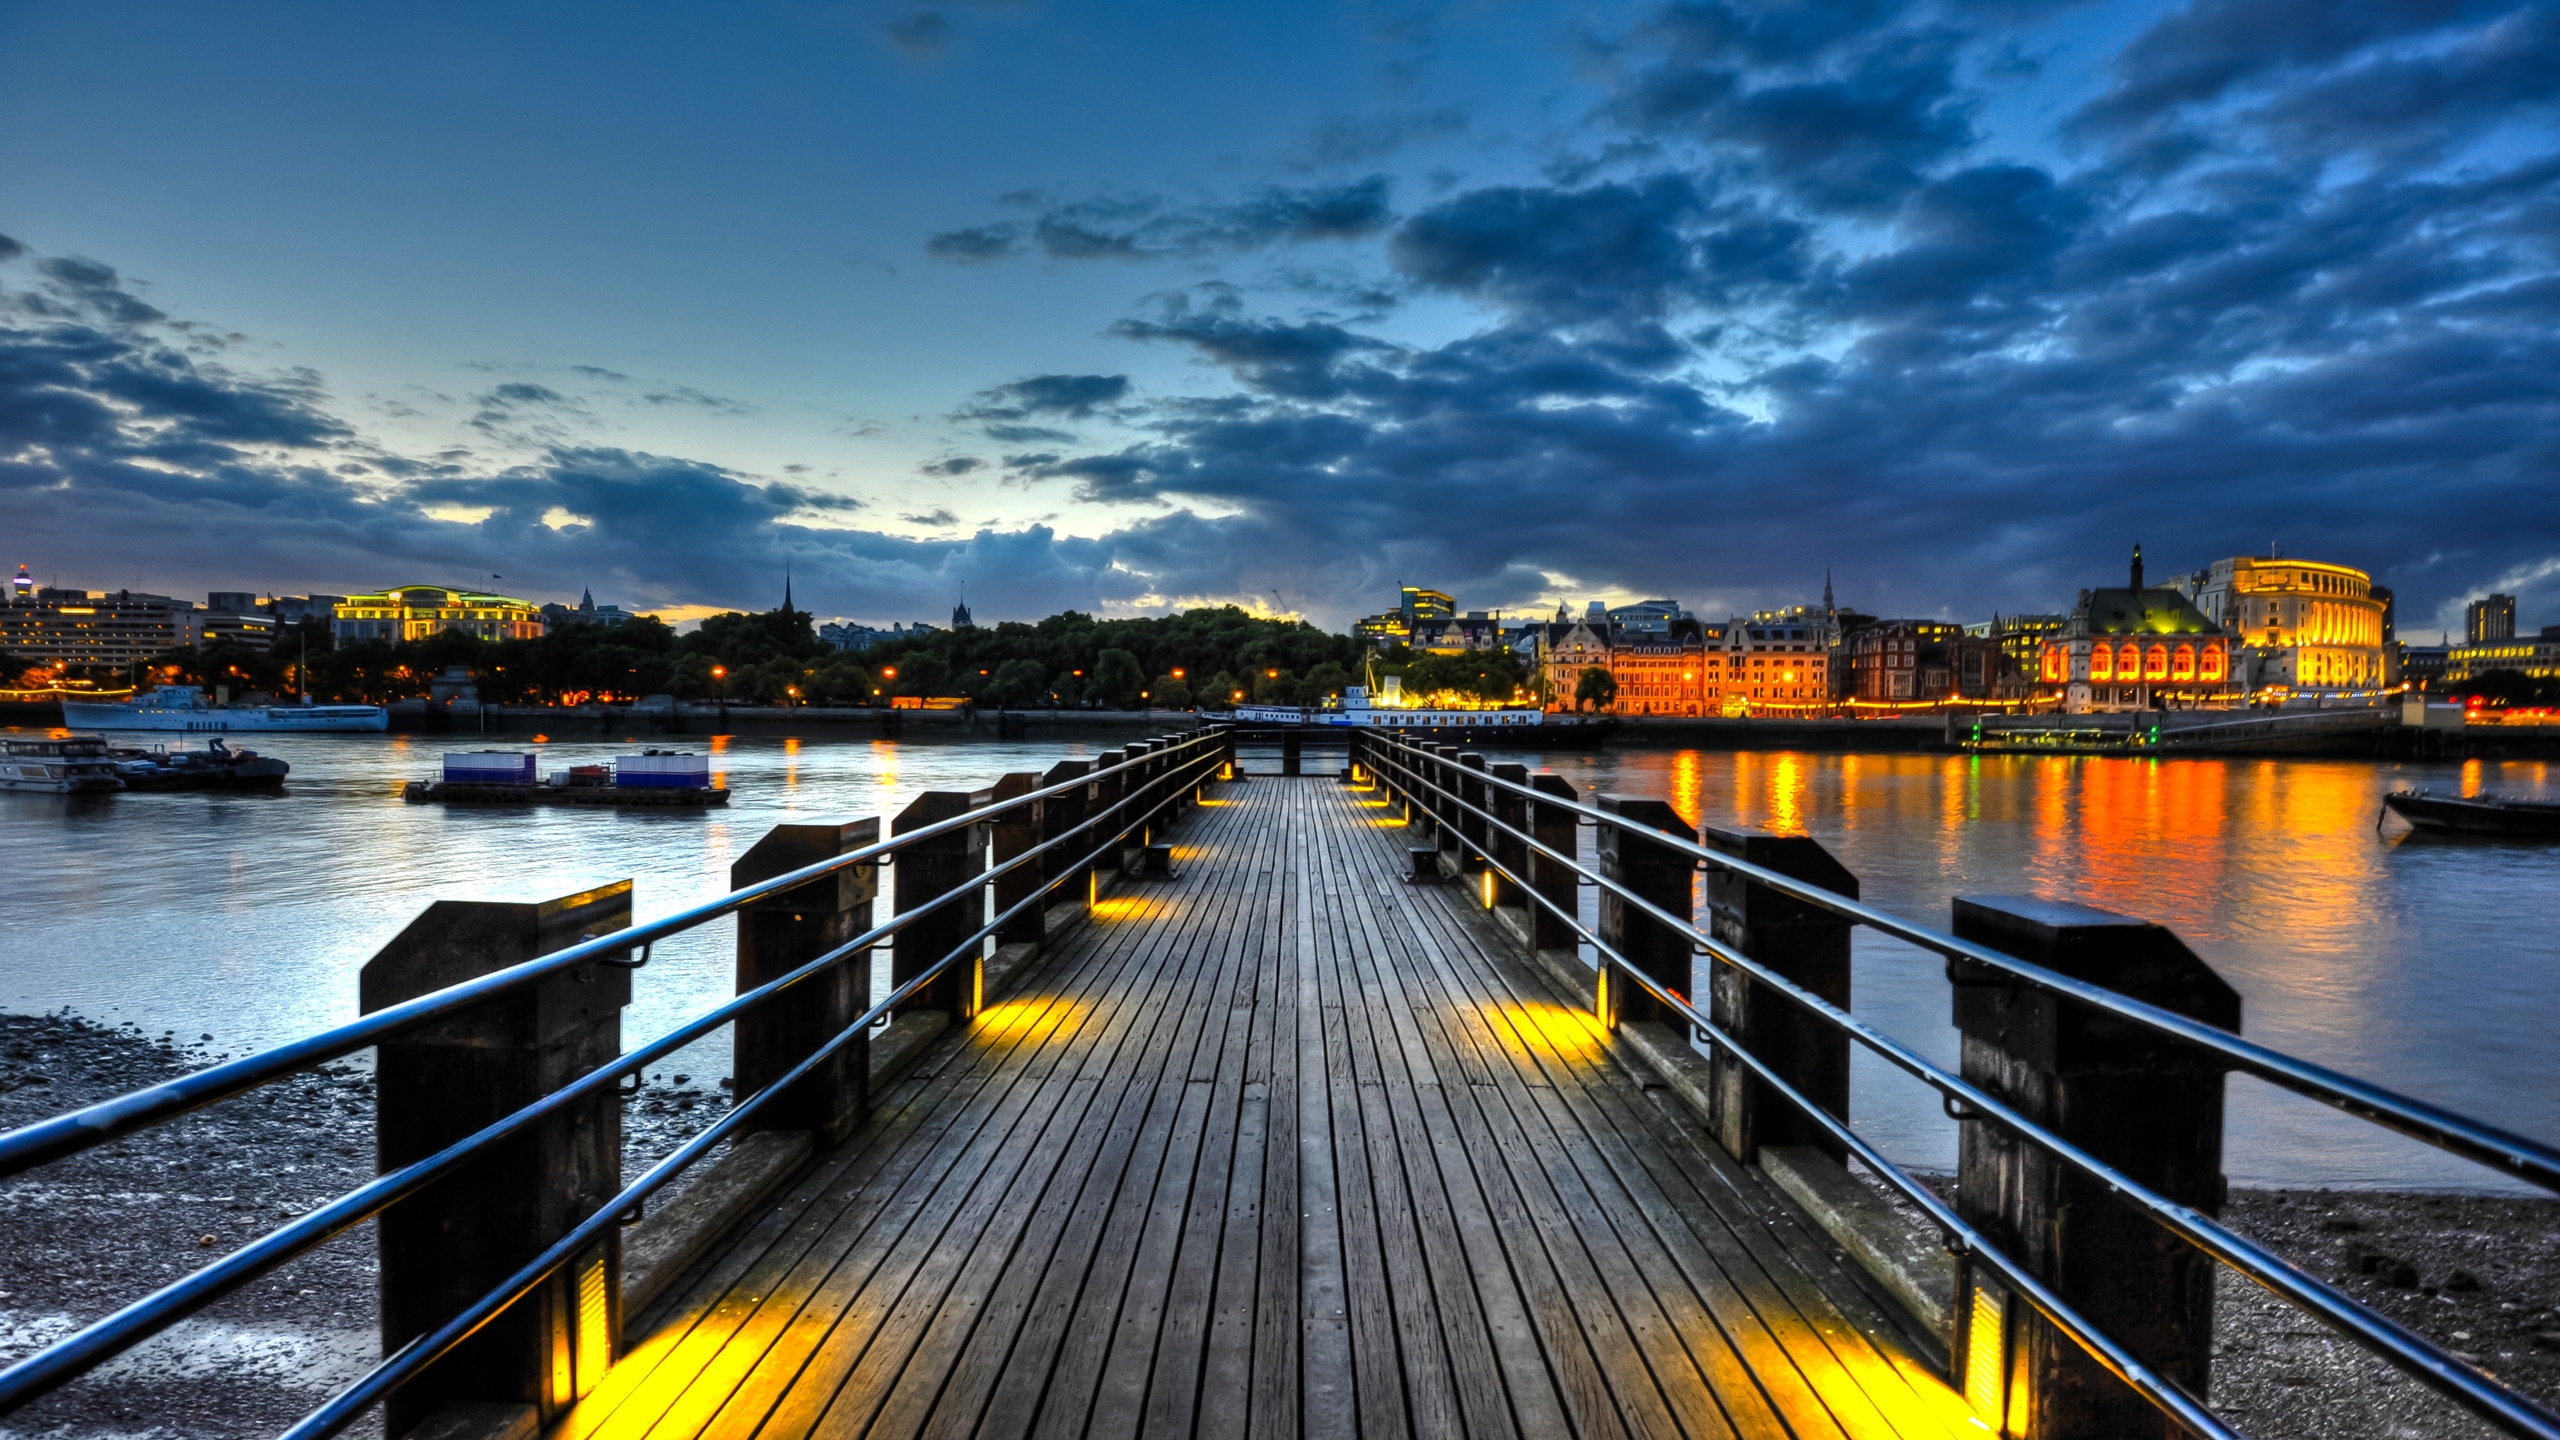 Thames Pier for 2560x1440 HDTV resolution